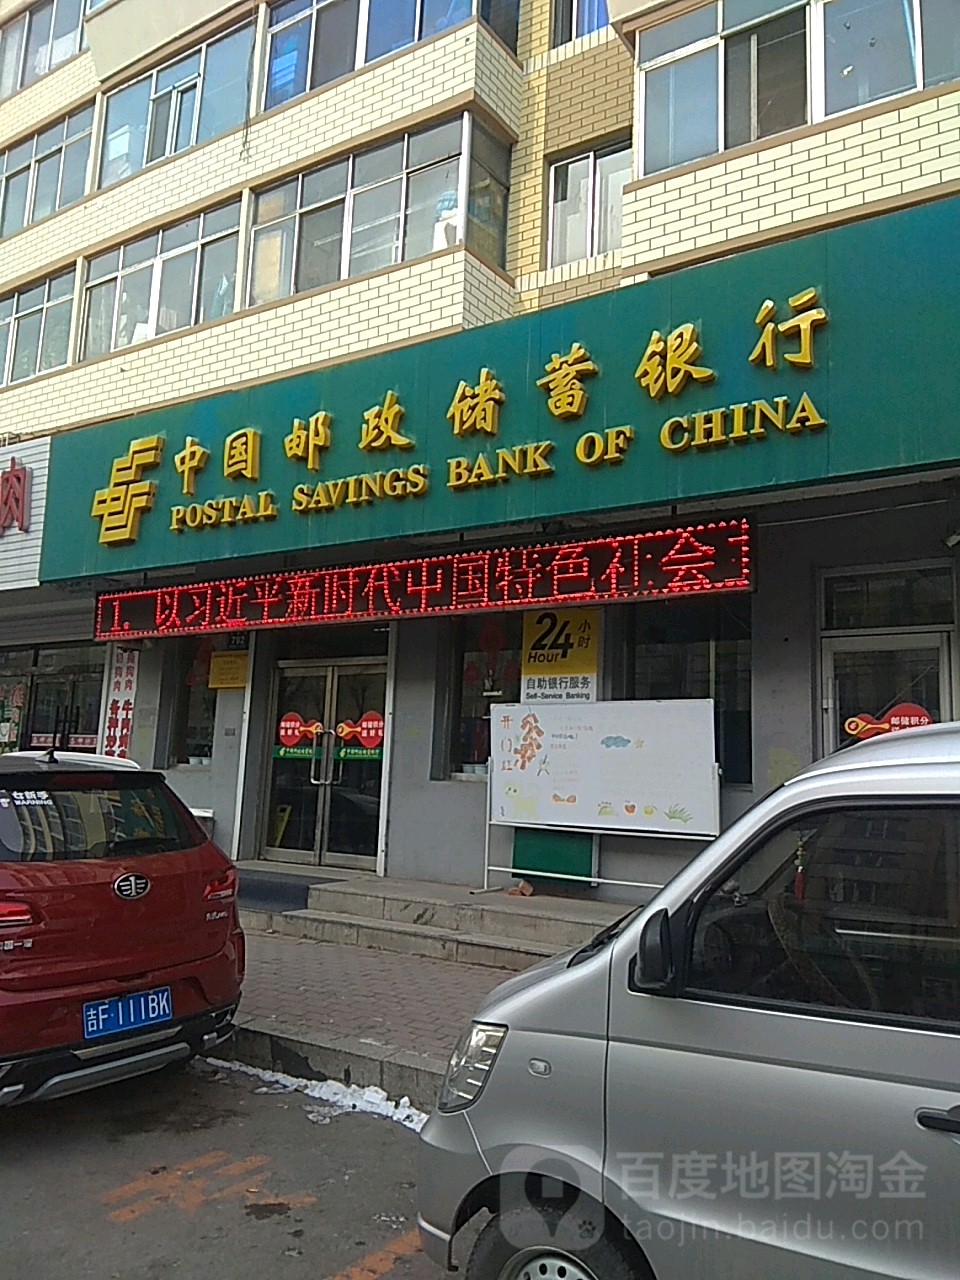 中國郵政儲蓄銀行(沿江支行)